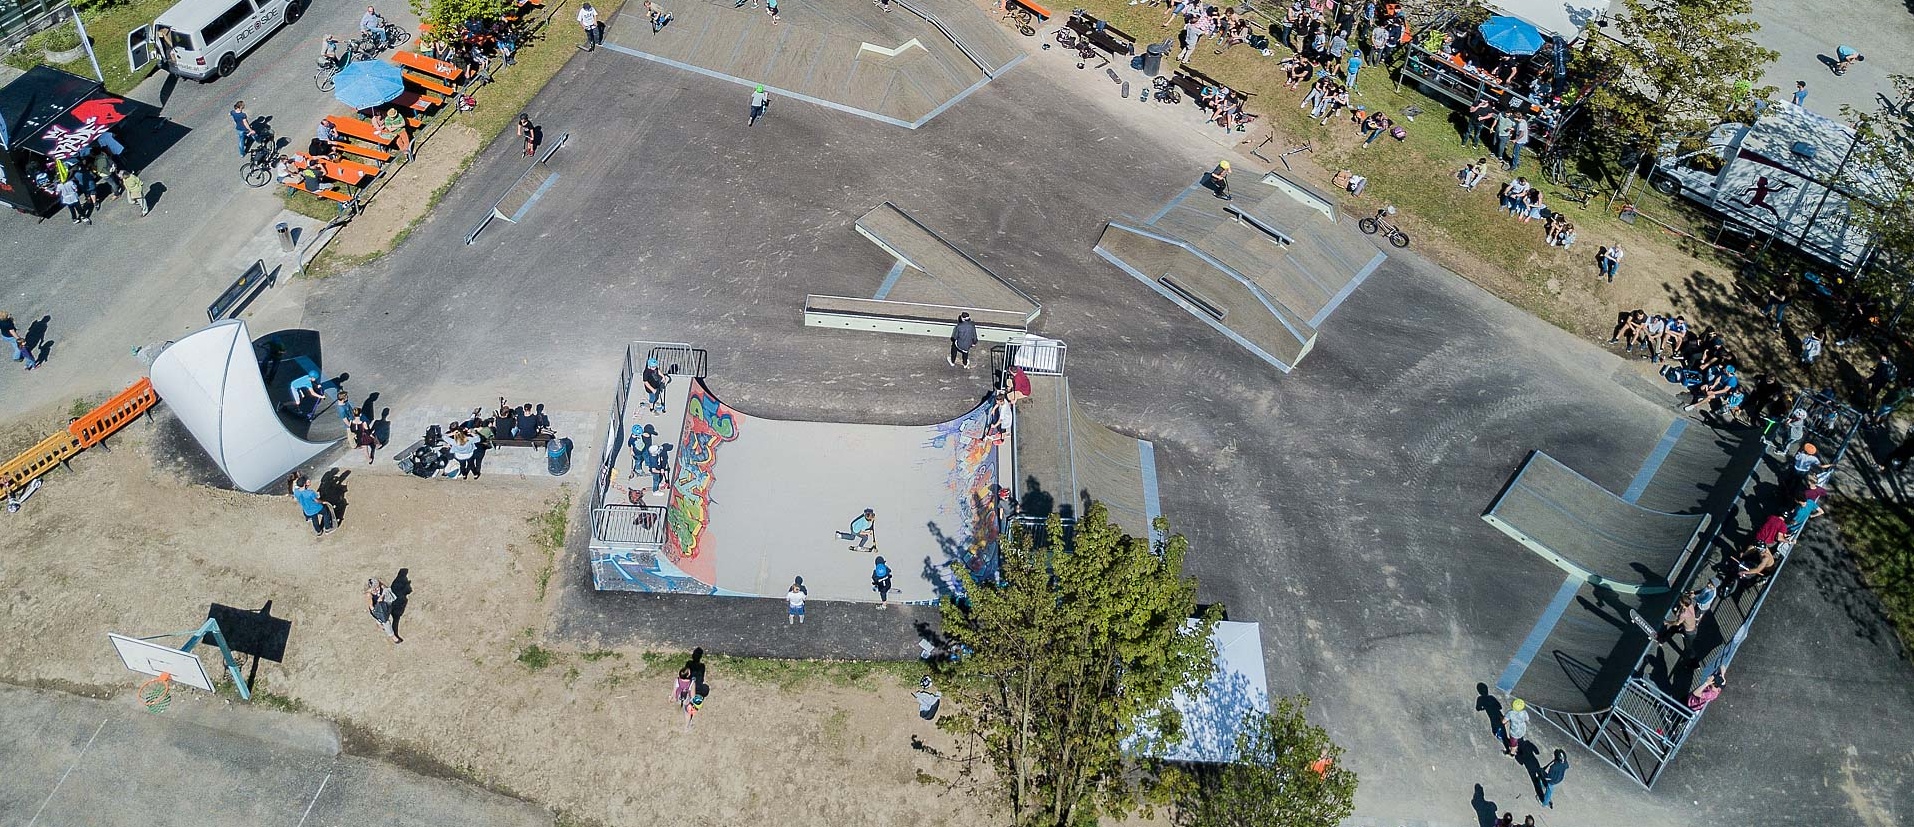 Skate park Langenargen from above